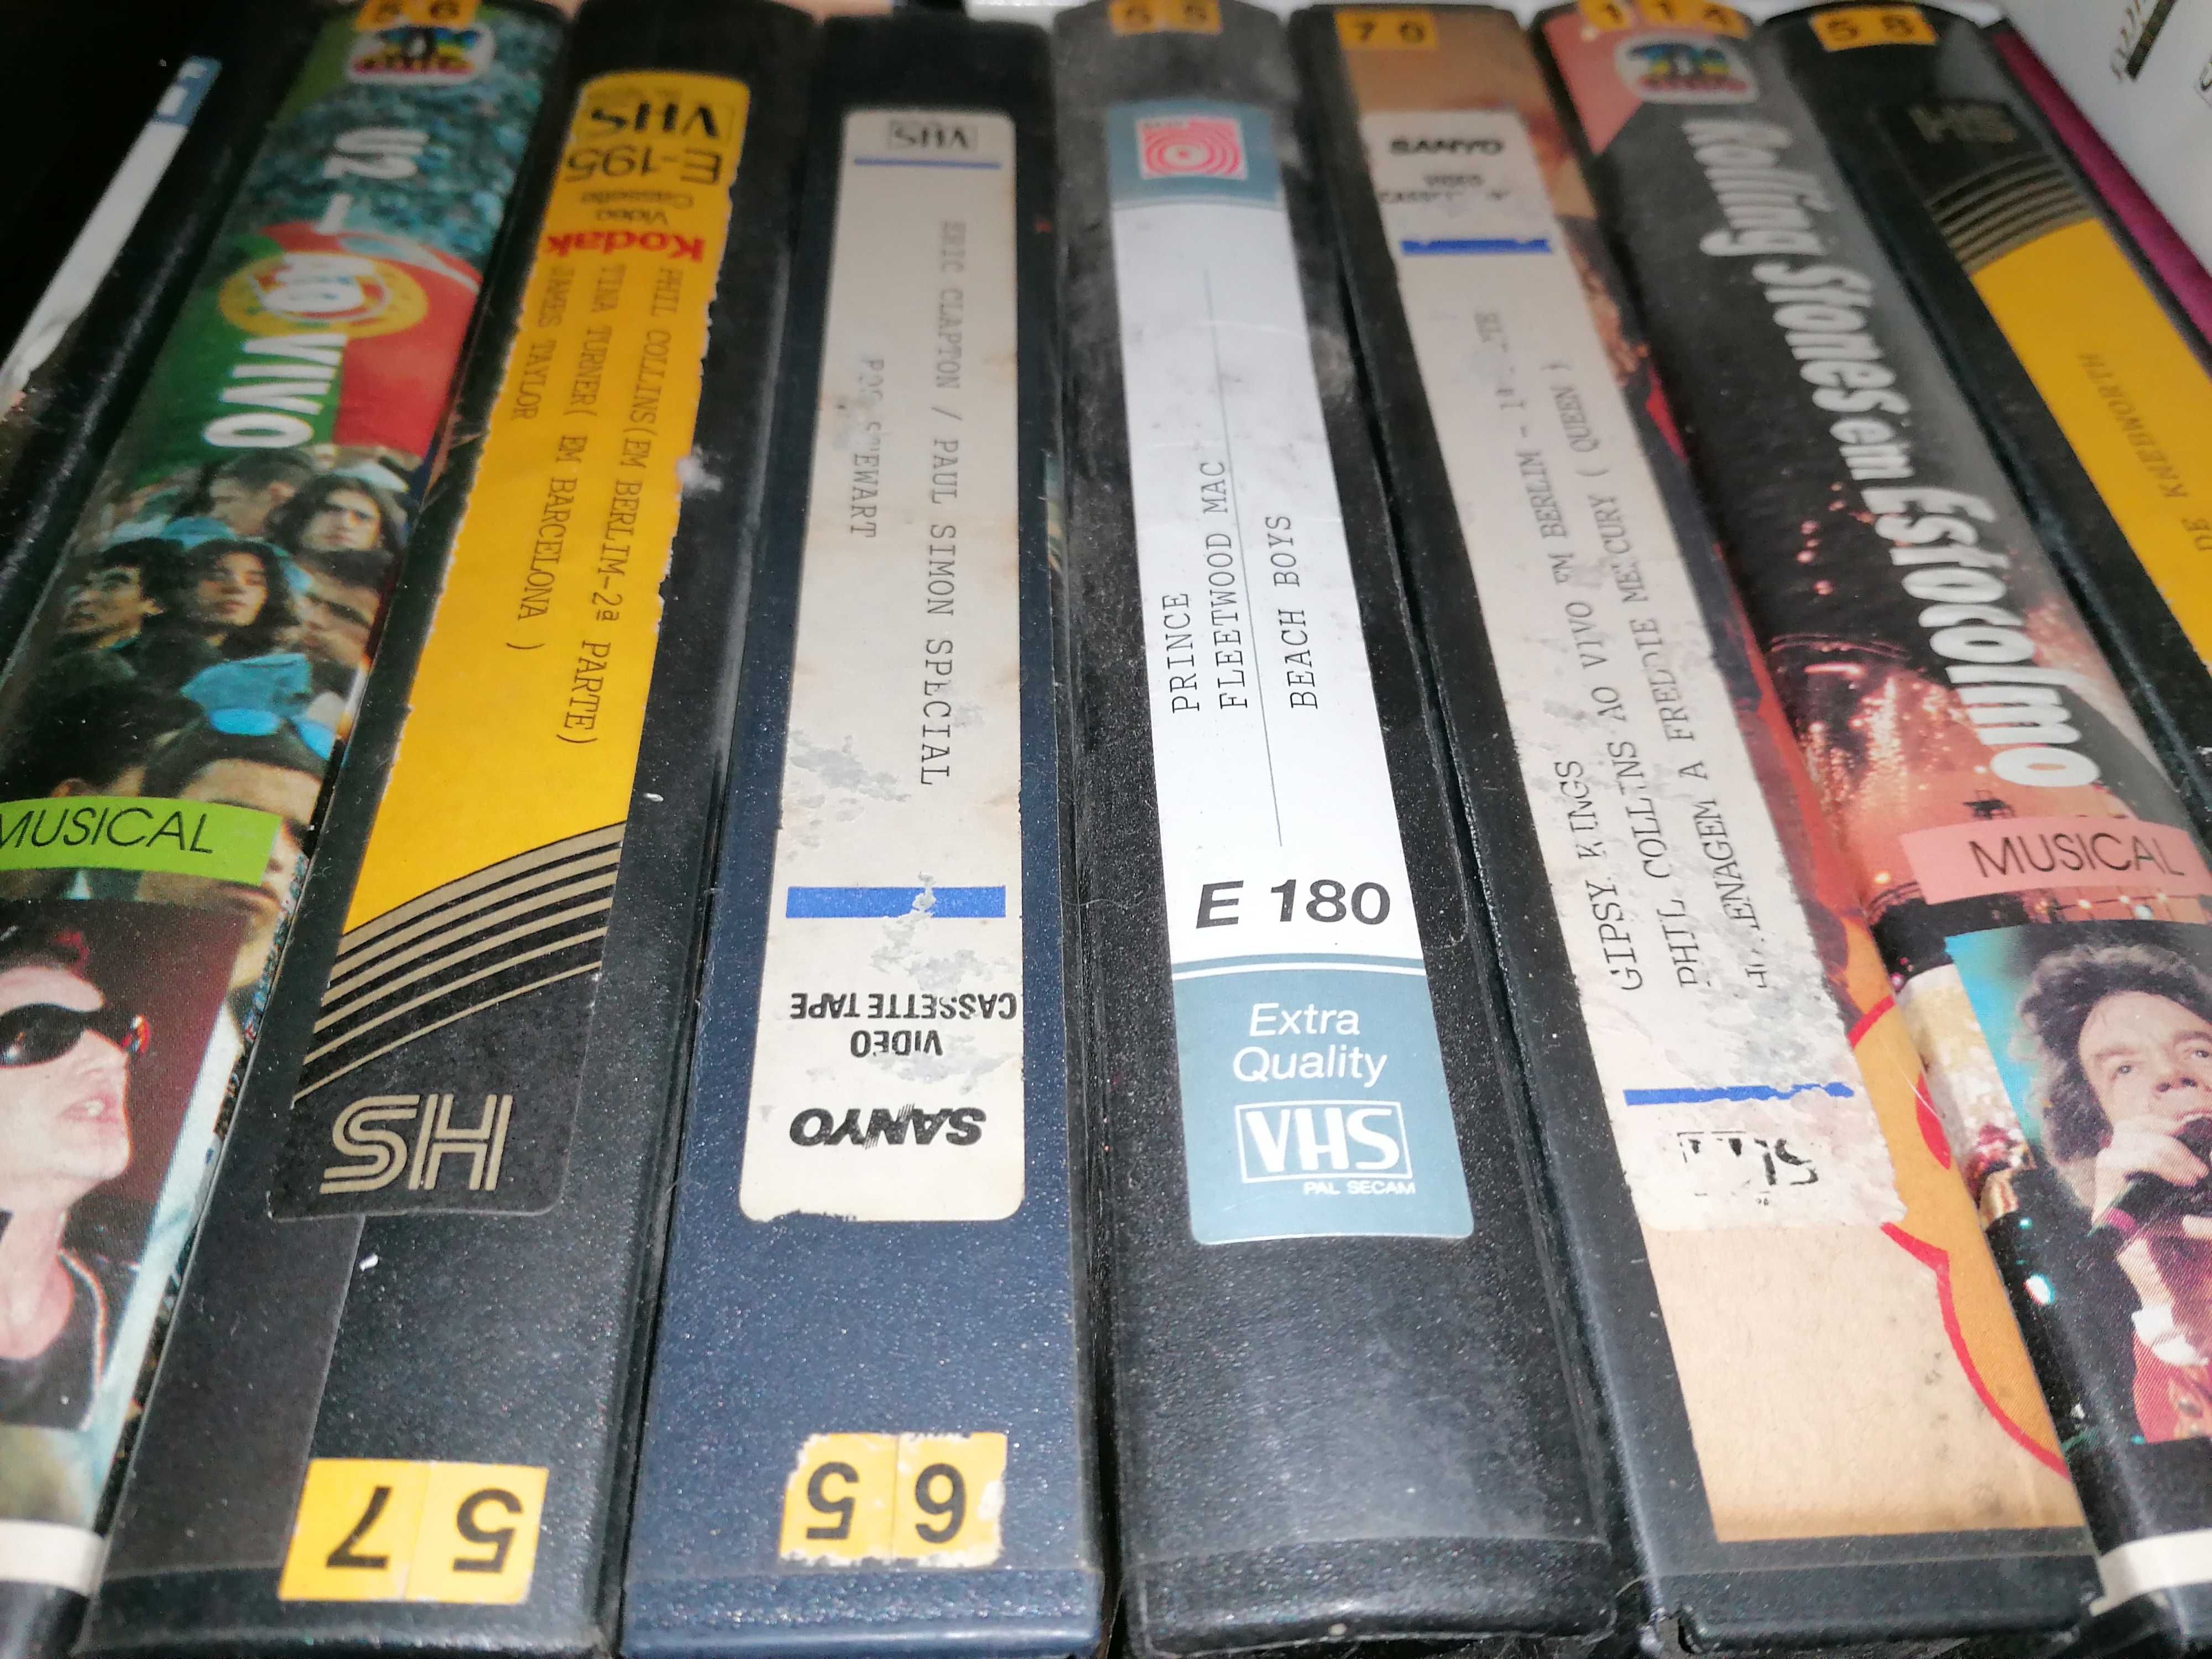 Cassete VHS da Vida Selvagem, concertos Música, Filmes portugueses